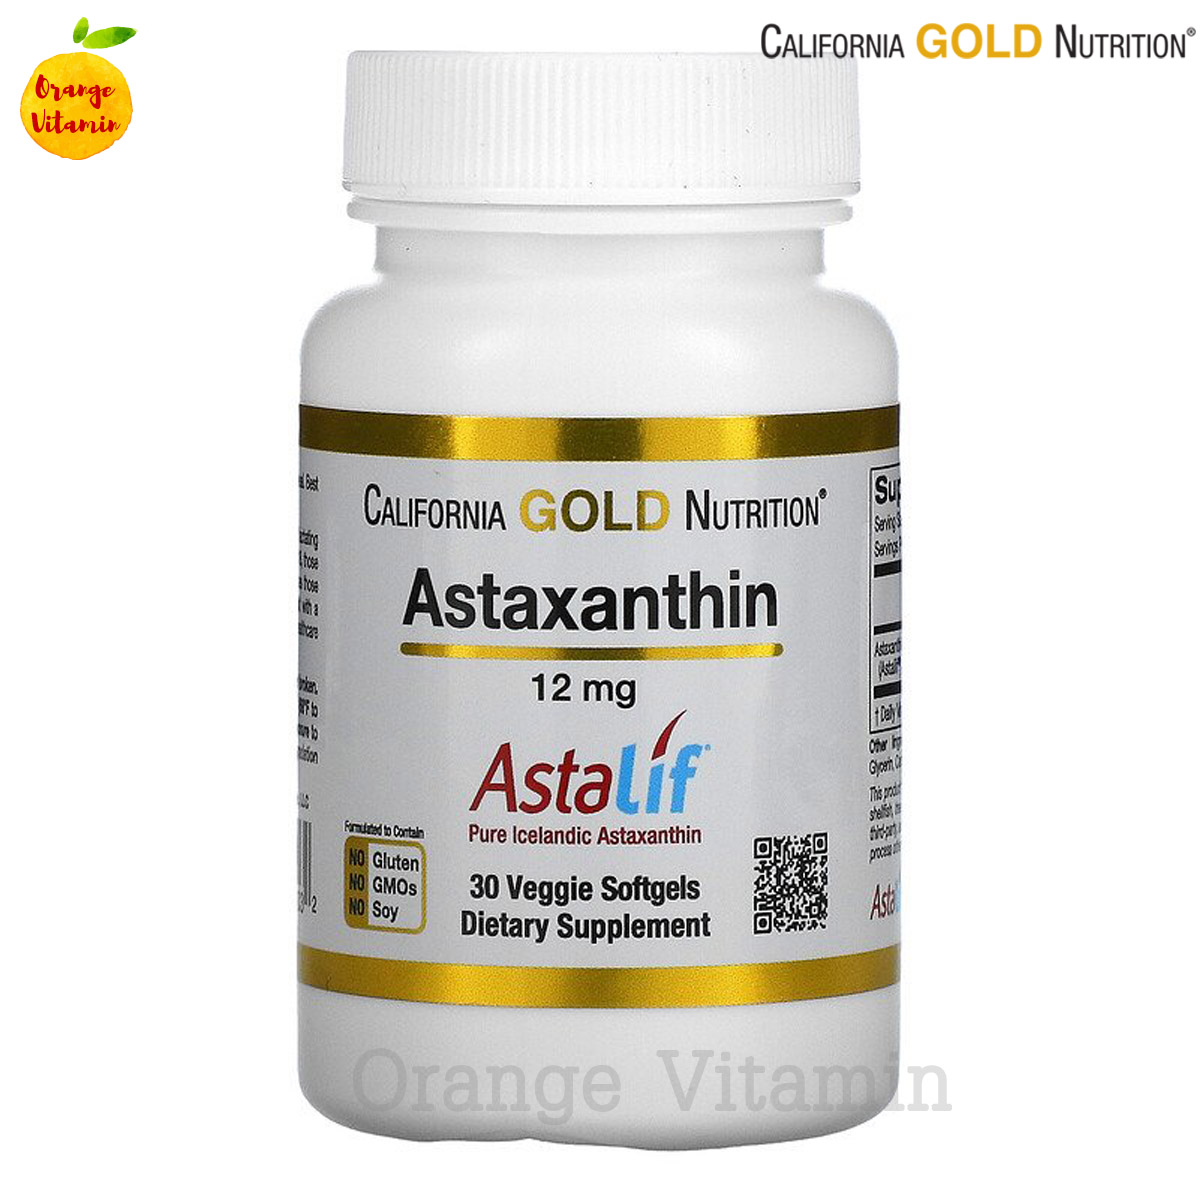 แอสต้าแซนธิน สารสกัดจากสาหร่ายสีแดง California Gold Nutrition, Astaxanthin, Natural, 12 mg, 30 Veggie Softgels  แอสต้าแซนธีน แอสต้าแซนทีน สาหร่ายสีแดง